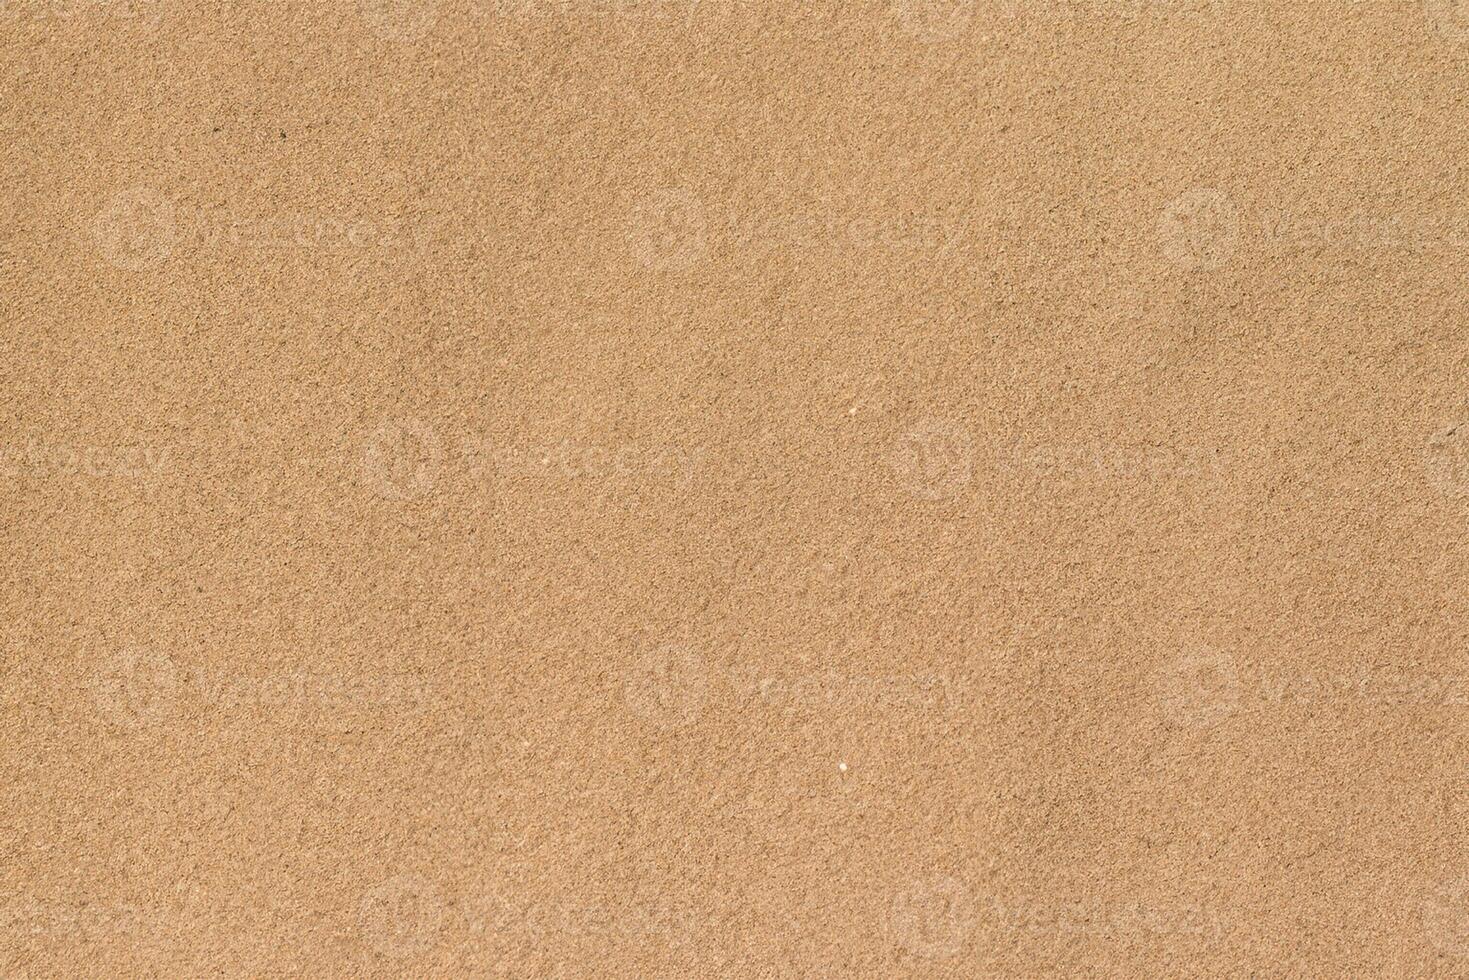 sereen zand, een vogel oog visie van strand textuur. foto